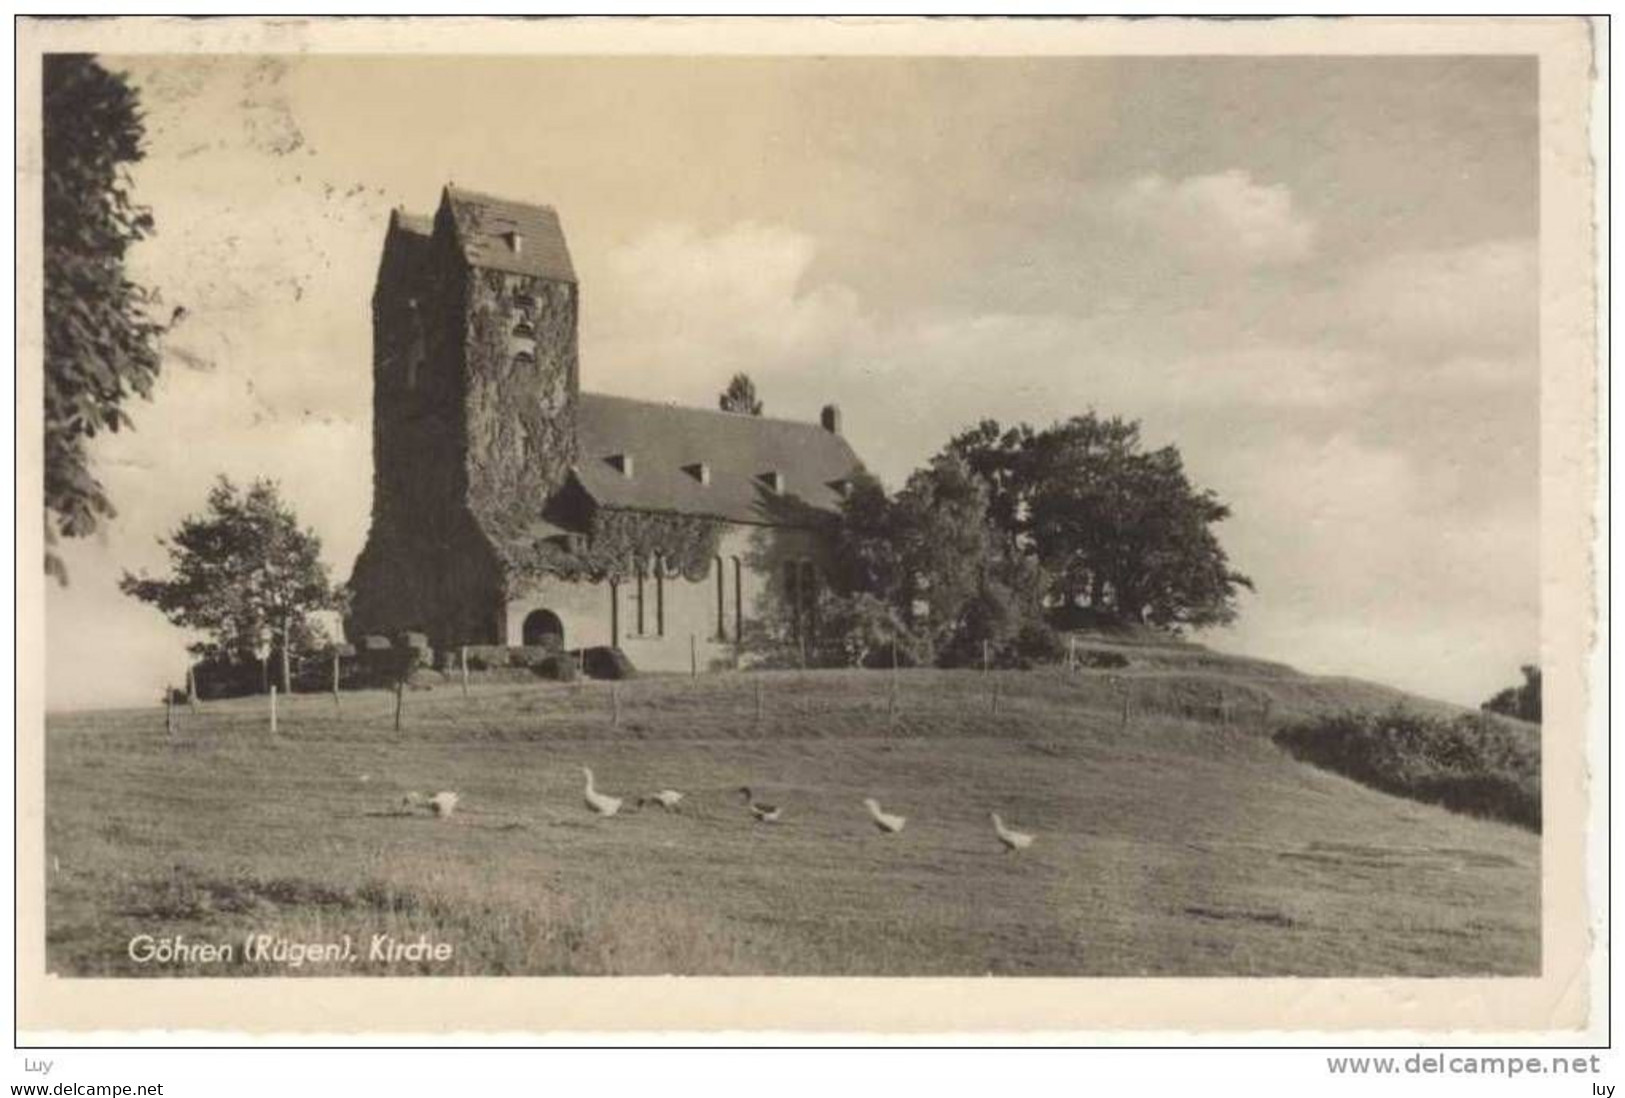 GÖHREN Auf Rügen - Kirche 1952 - Göhren